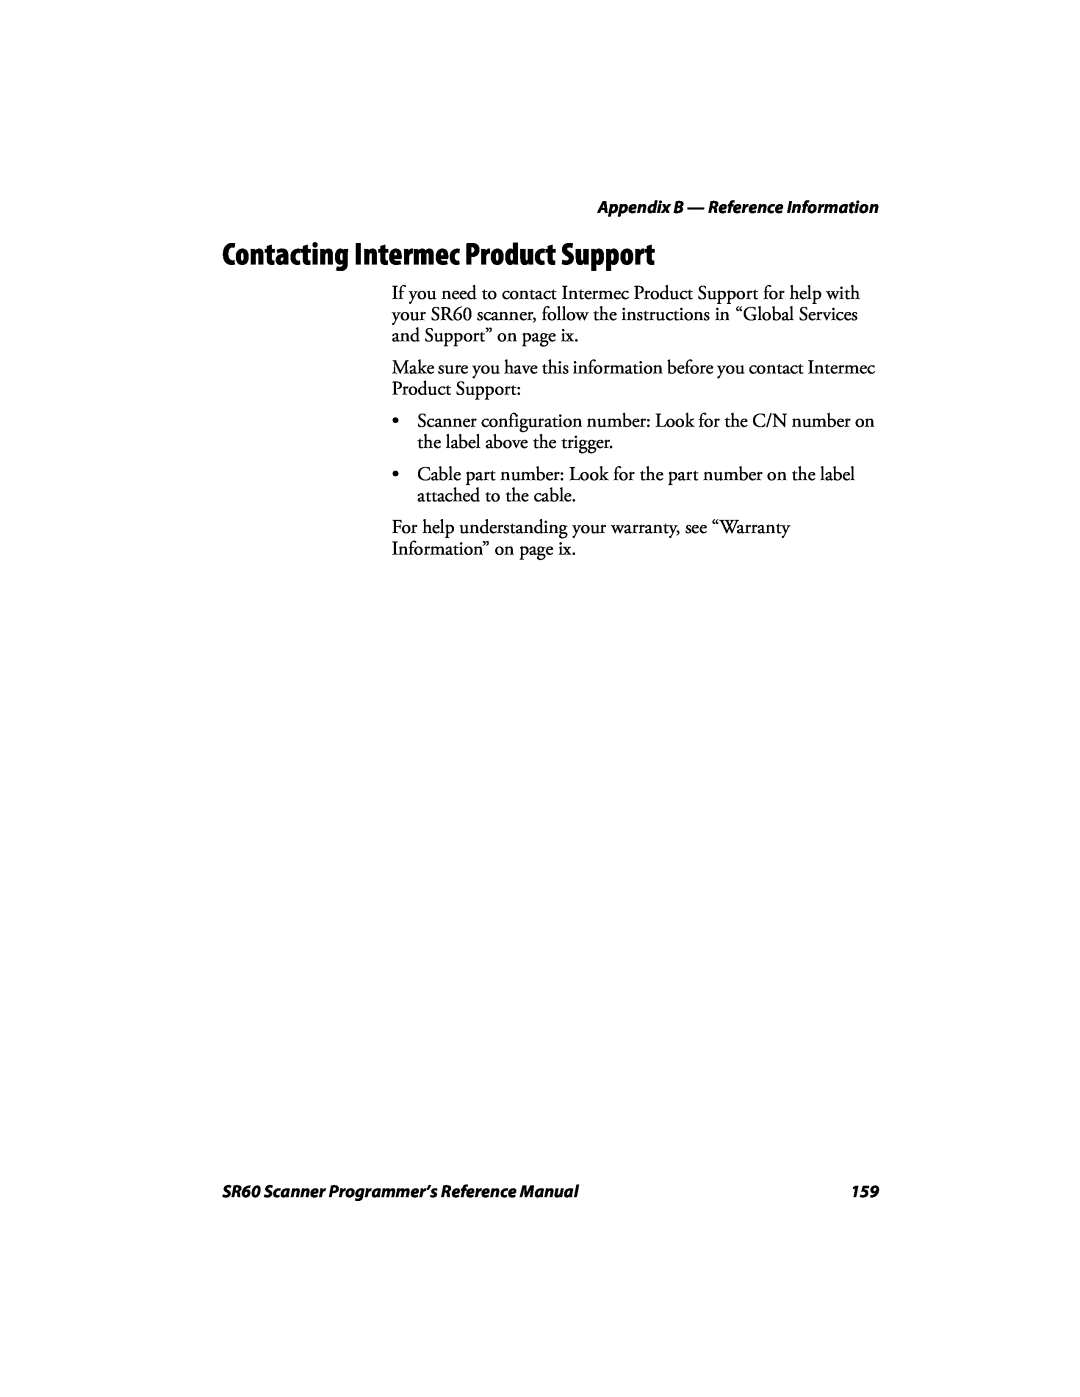 Intermec SR60 manual Contacting Intermec Product Support 